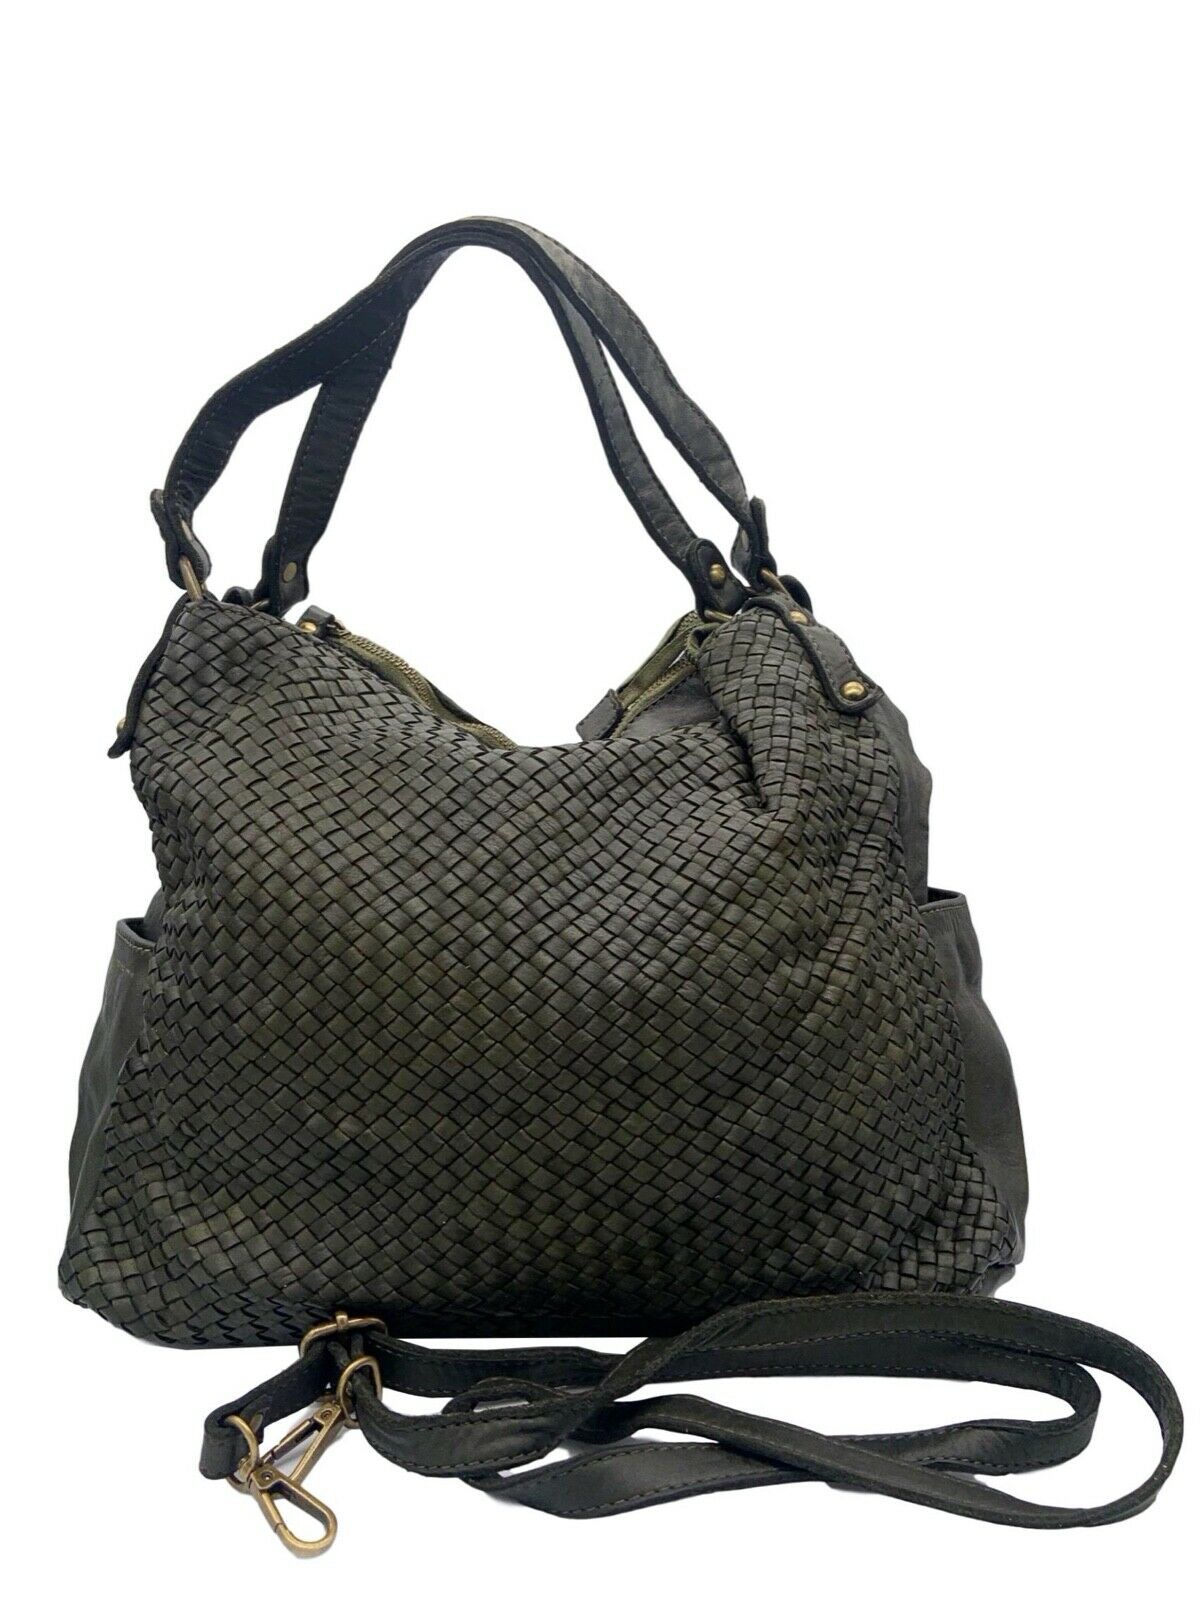 BZNA Bag Yuna Cognac Italy Designer Damen Handtasche Schultertasche Tasche